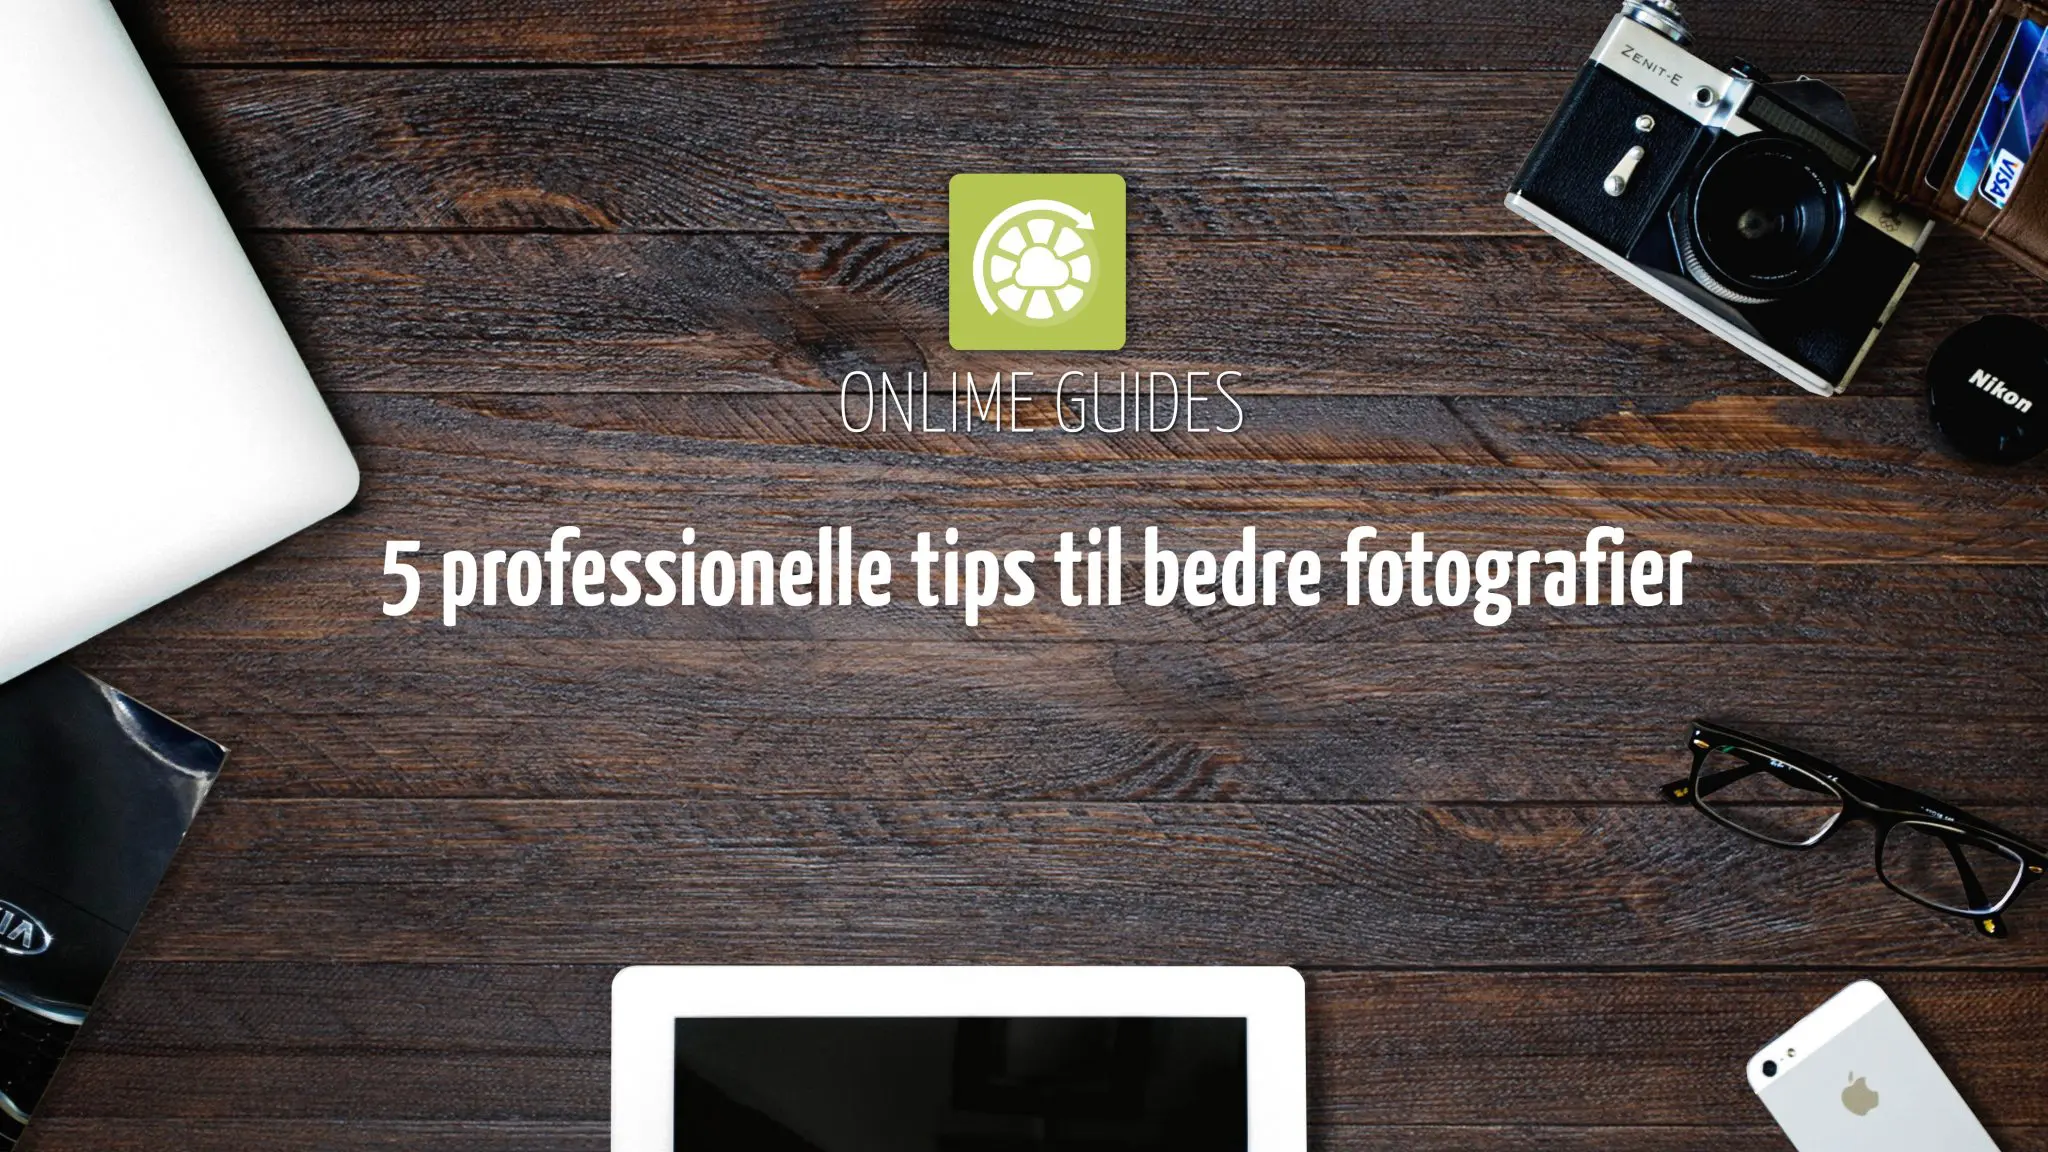 Featured image for “5 professionelle tips til bedre fotografier i dagligdagen”